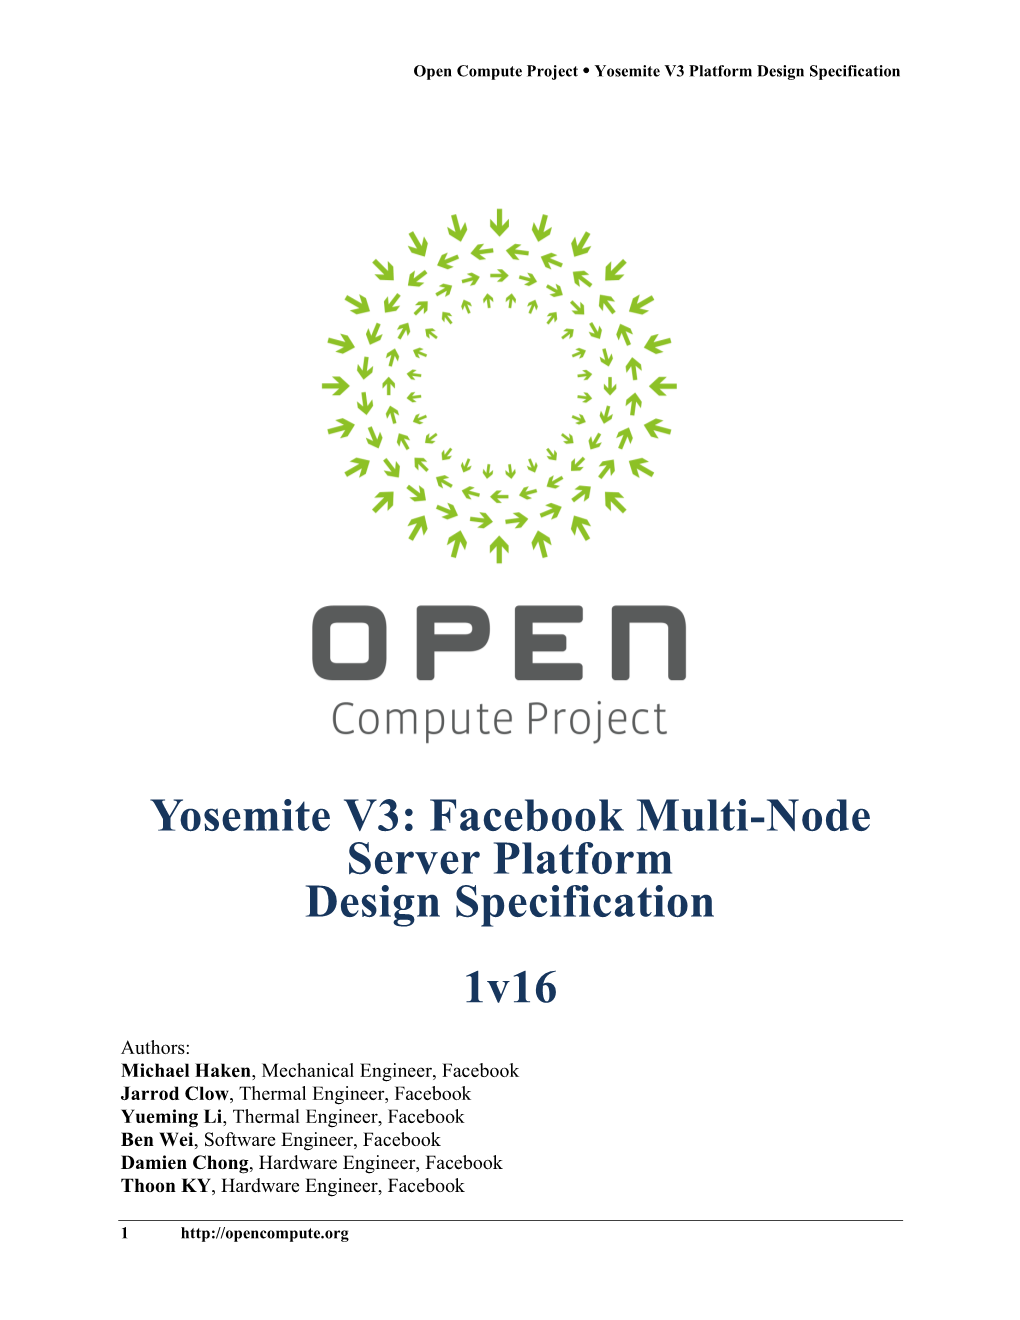 Yosemite V3: Facebook Multi-Node Server Platform Design Specification